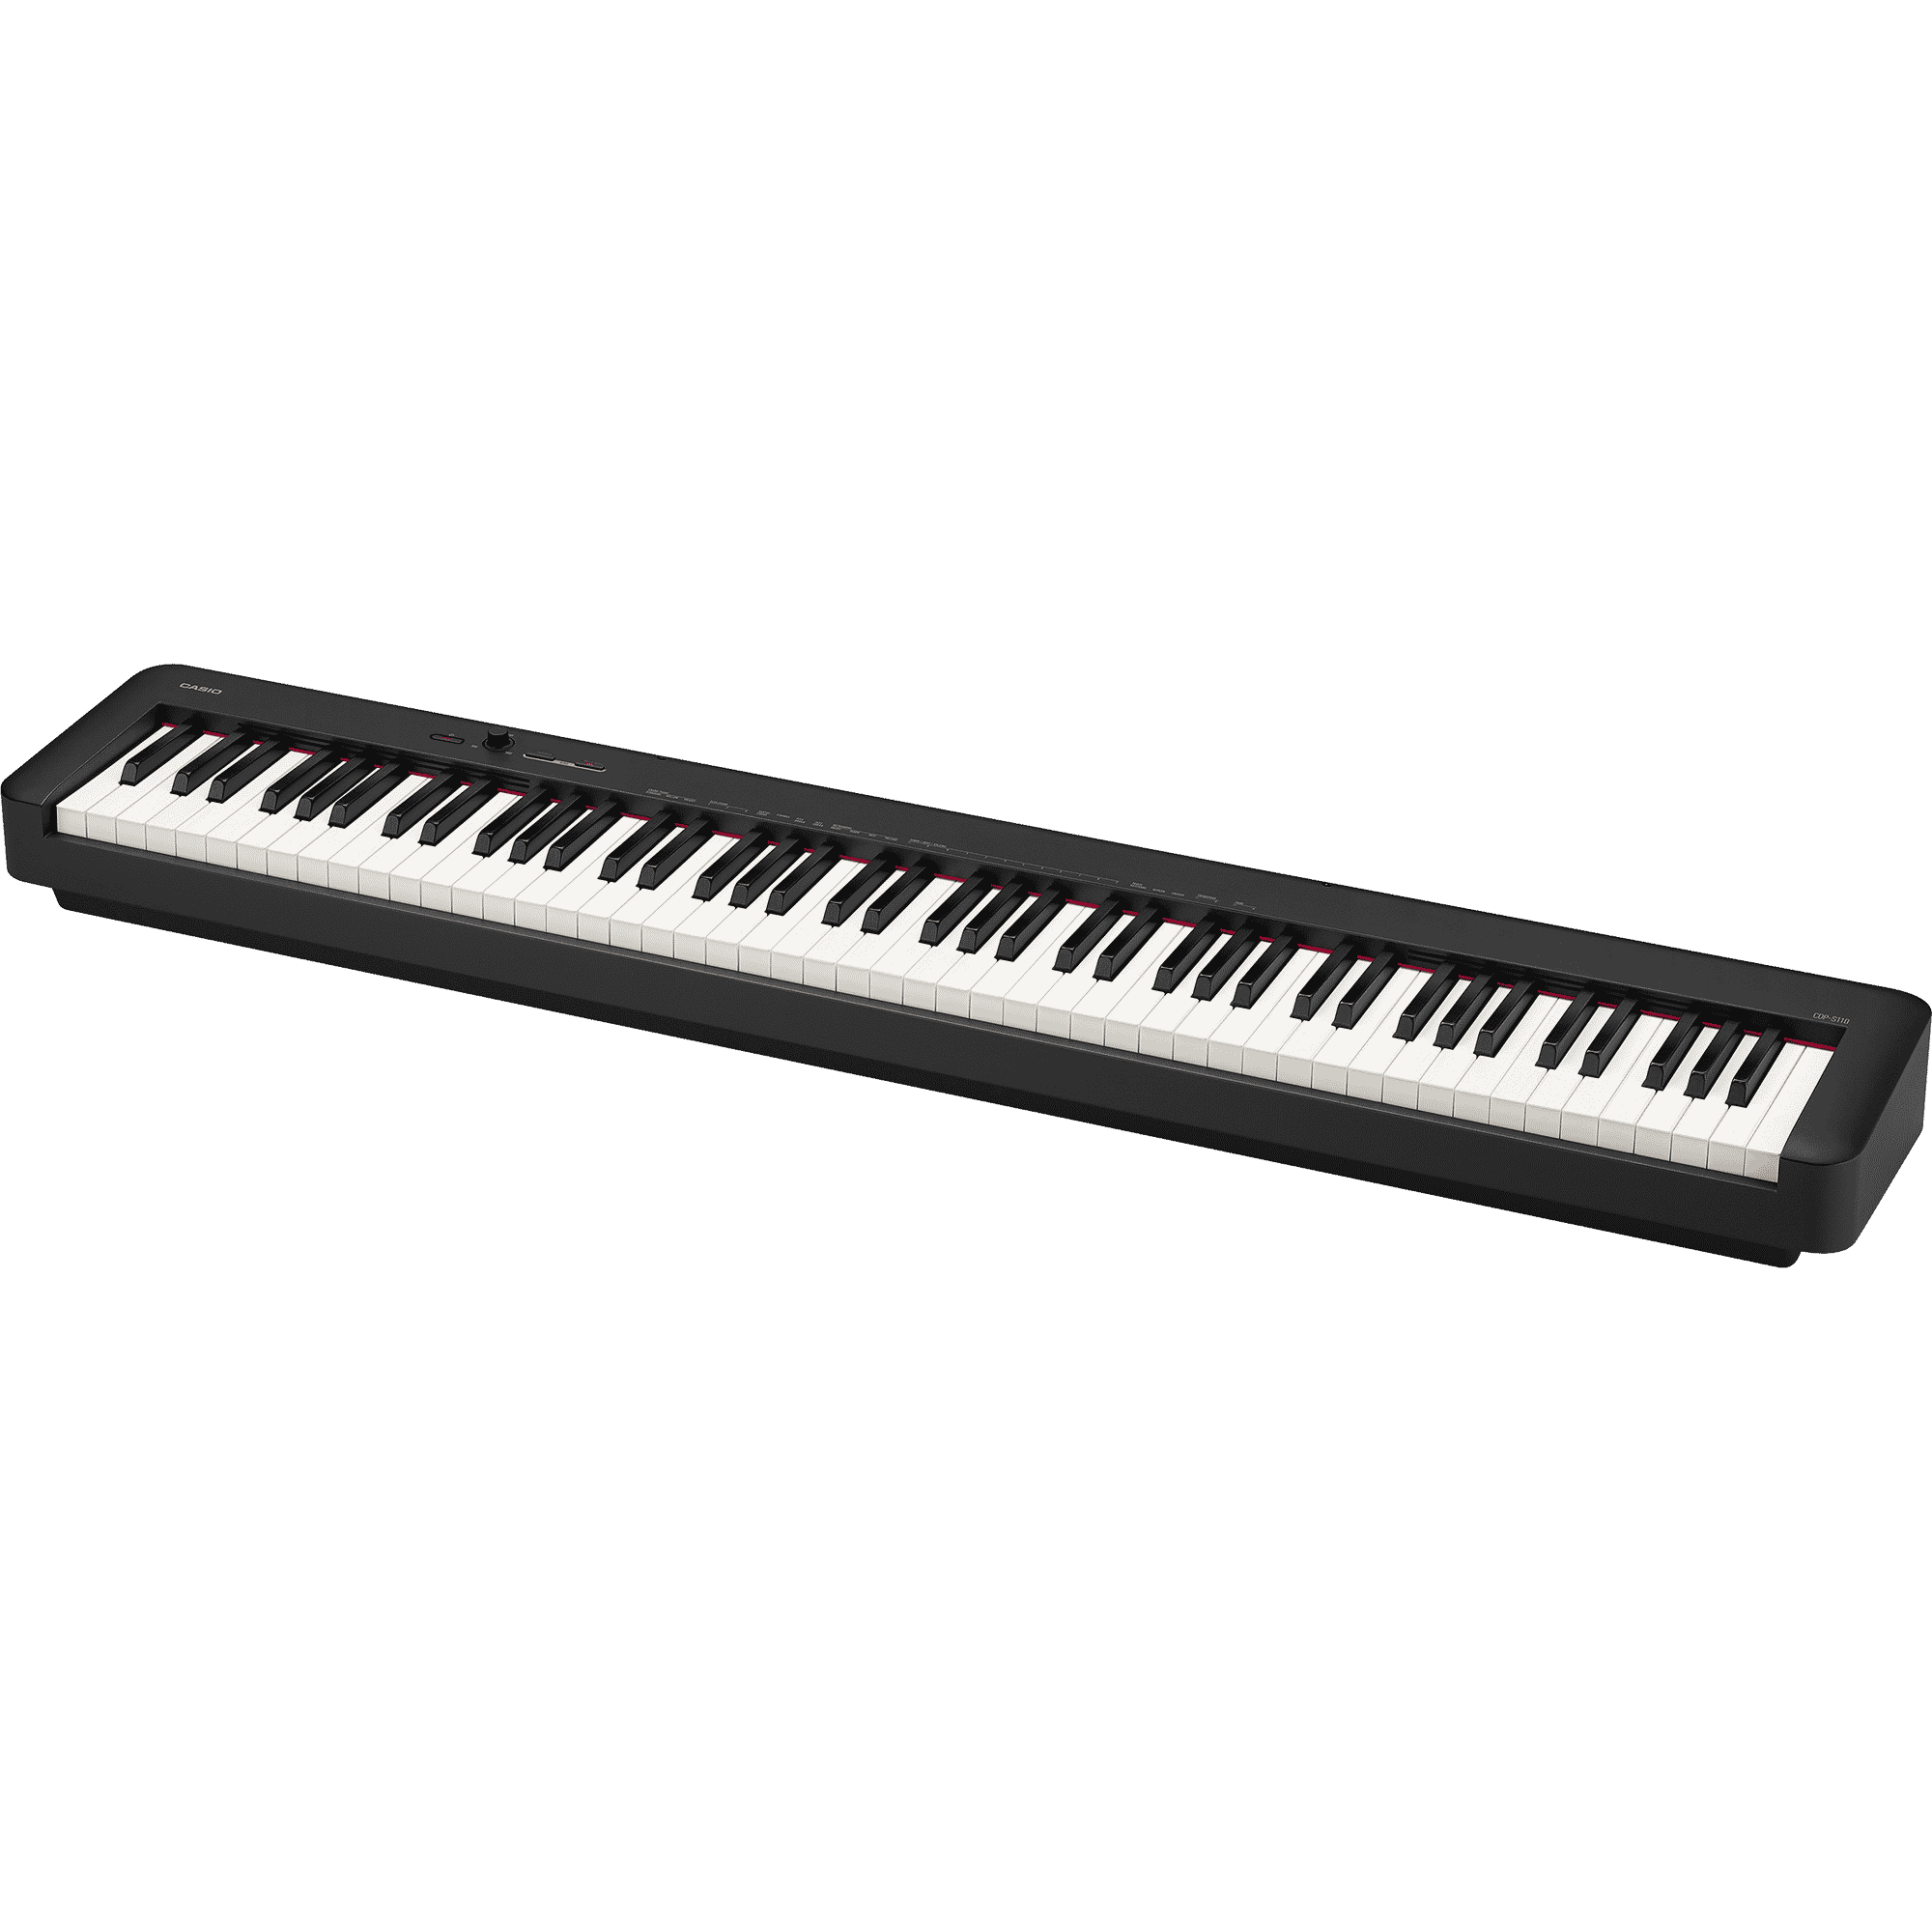 img src="/casio-el-klaver" alt="Casio CDP-S110BK Digital Piano"